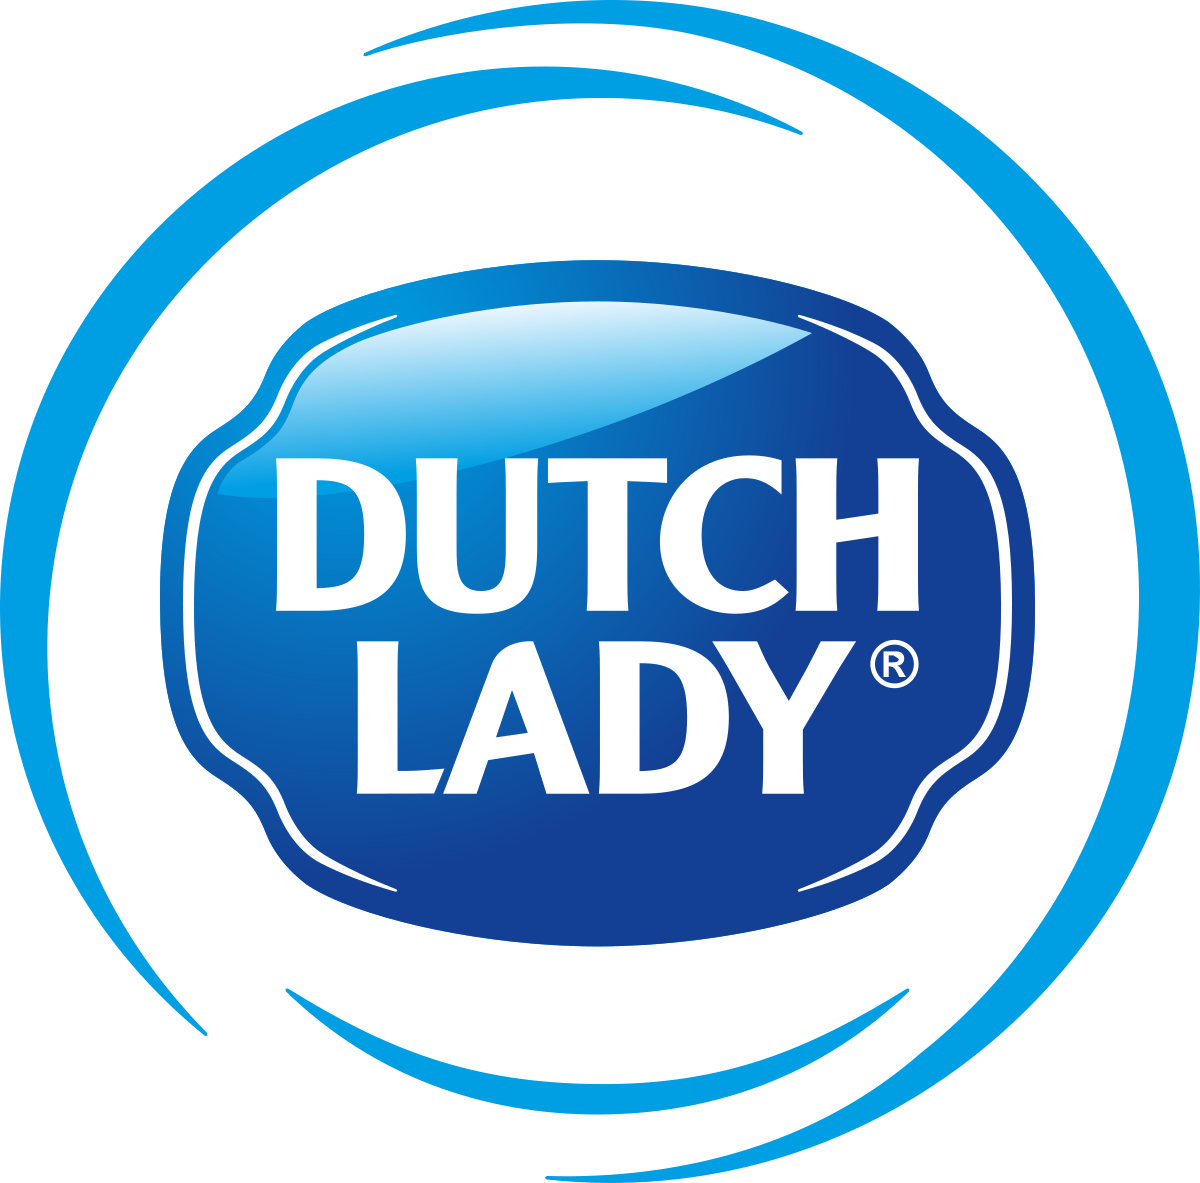 Dutch Lady Milk Industries Berhad Wikipedia